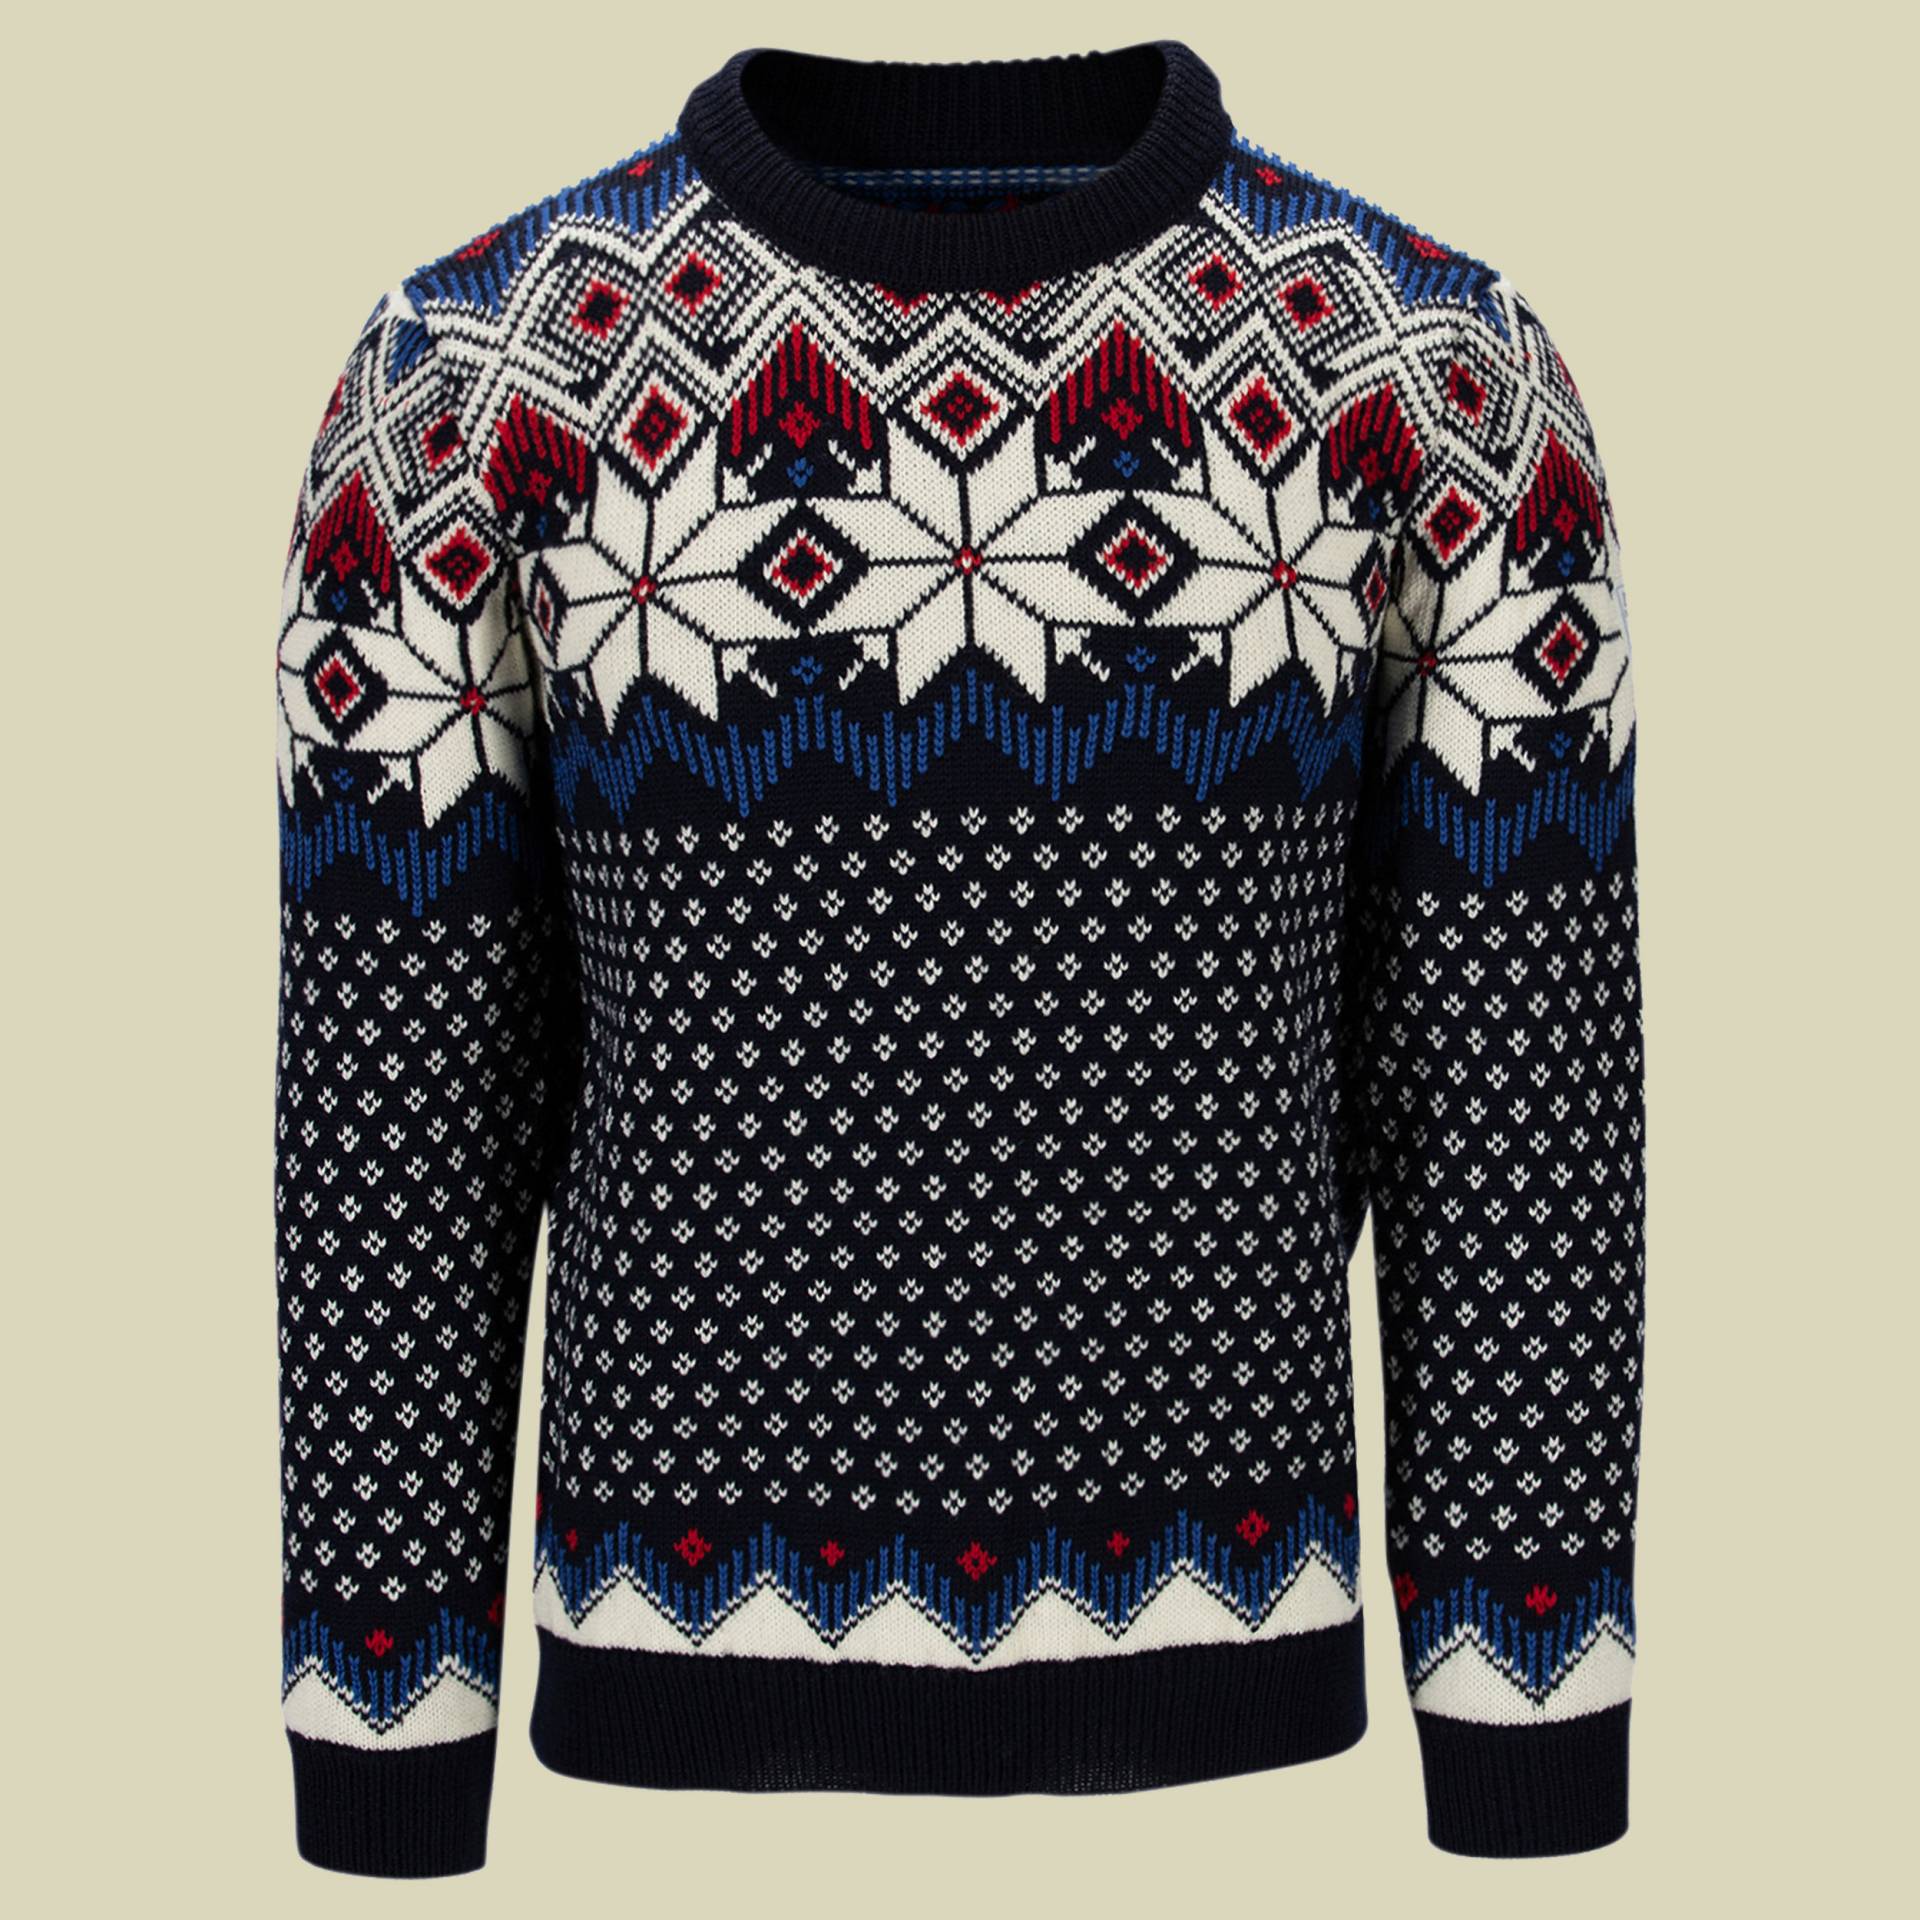 Vegard Sweater Men Größe S Farbe navy-off white-ultramarin-raspberry von Dale of Norway